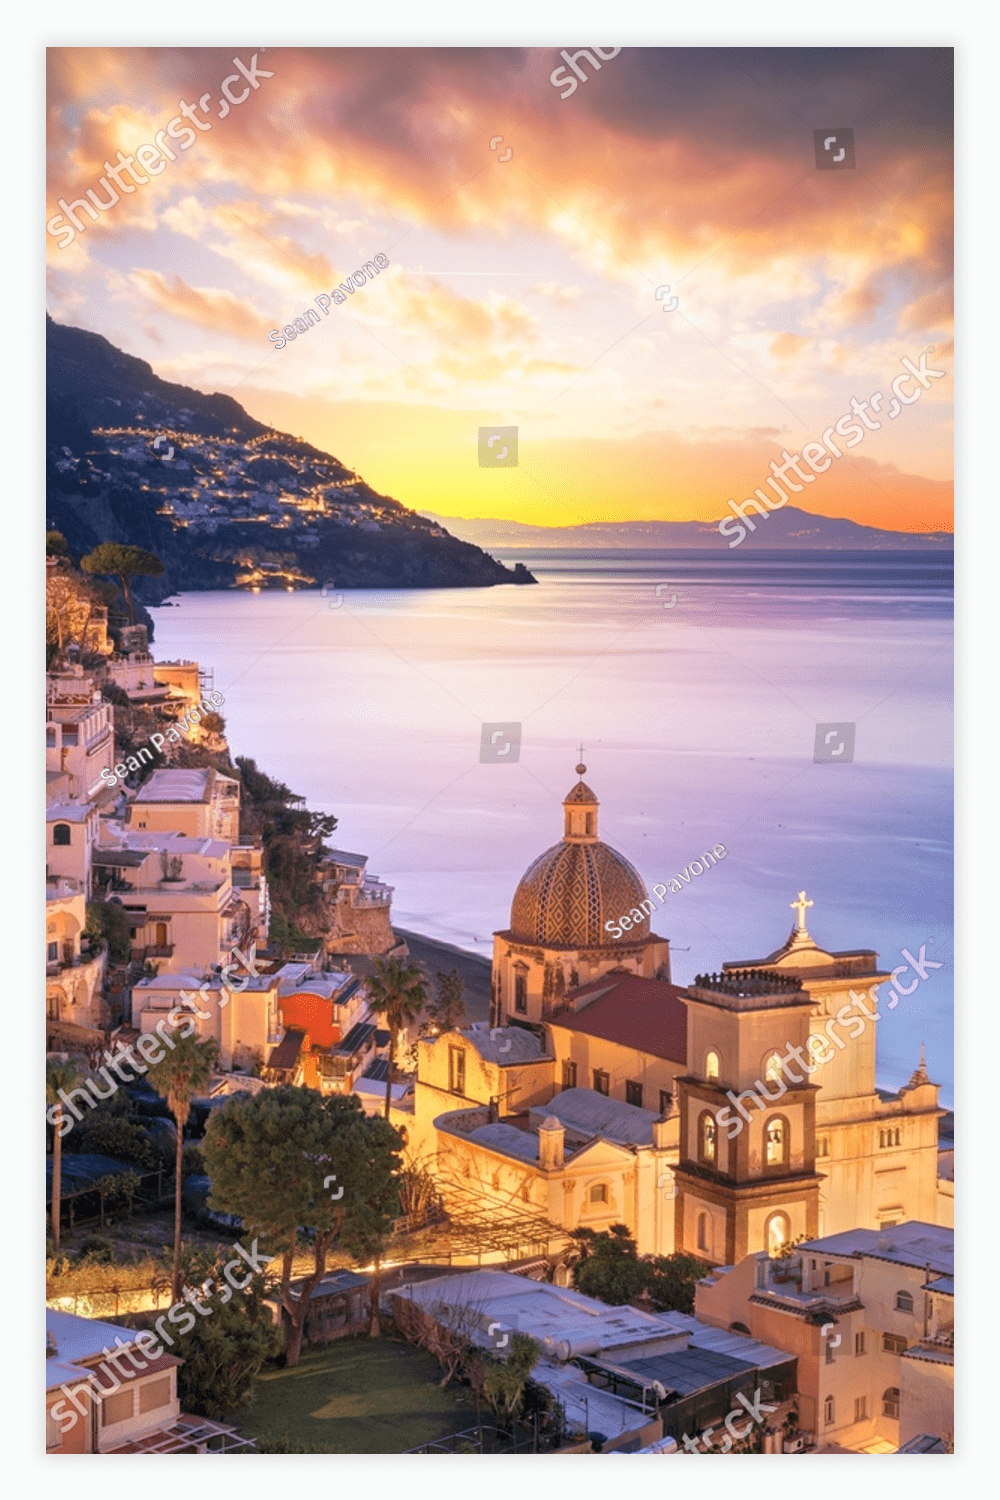 Positano, Italy along the Amalfi Coast at dusk.